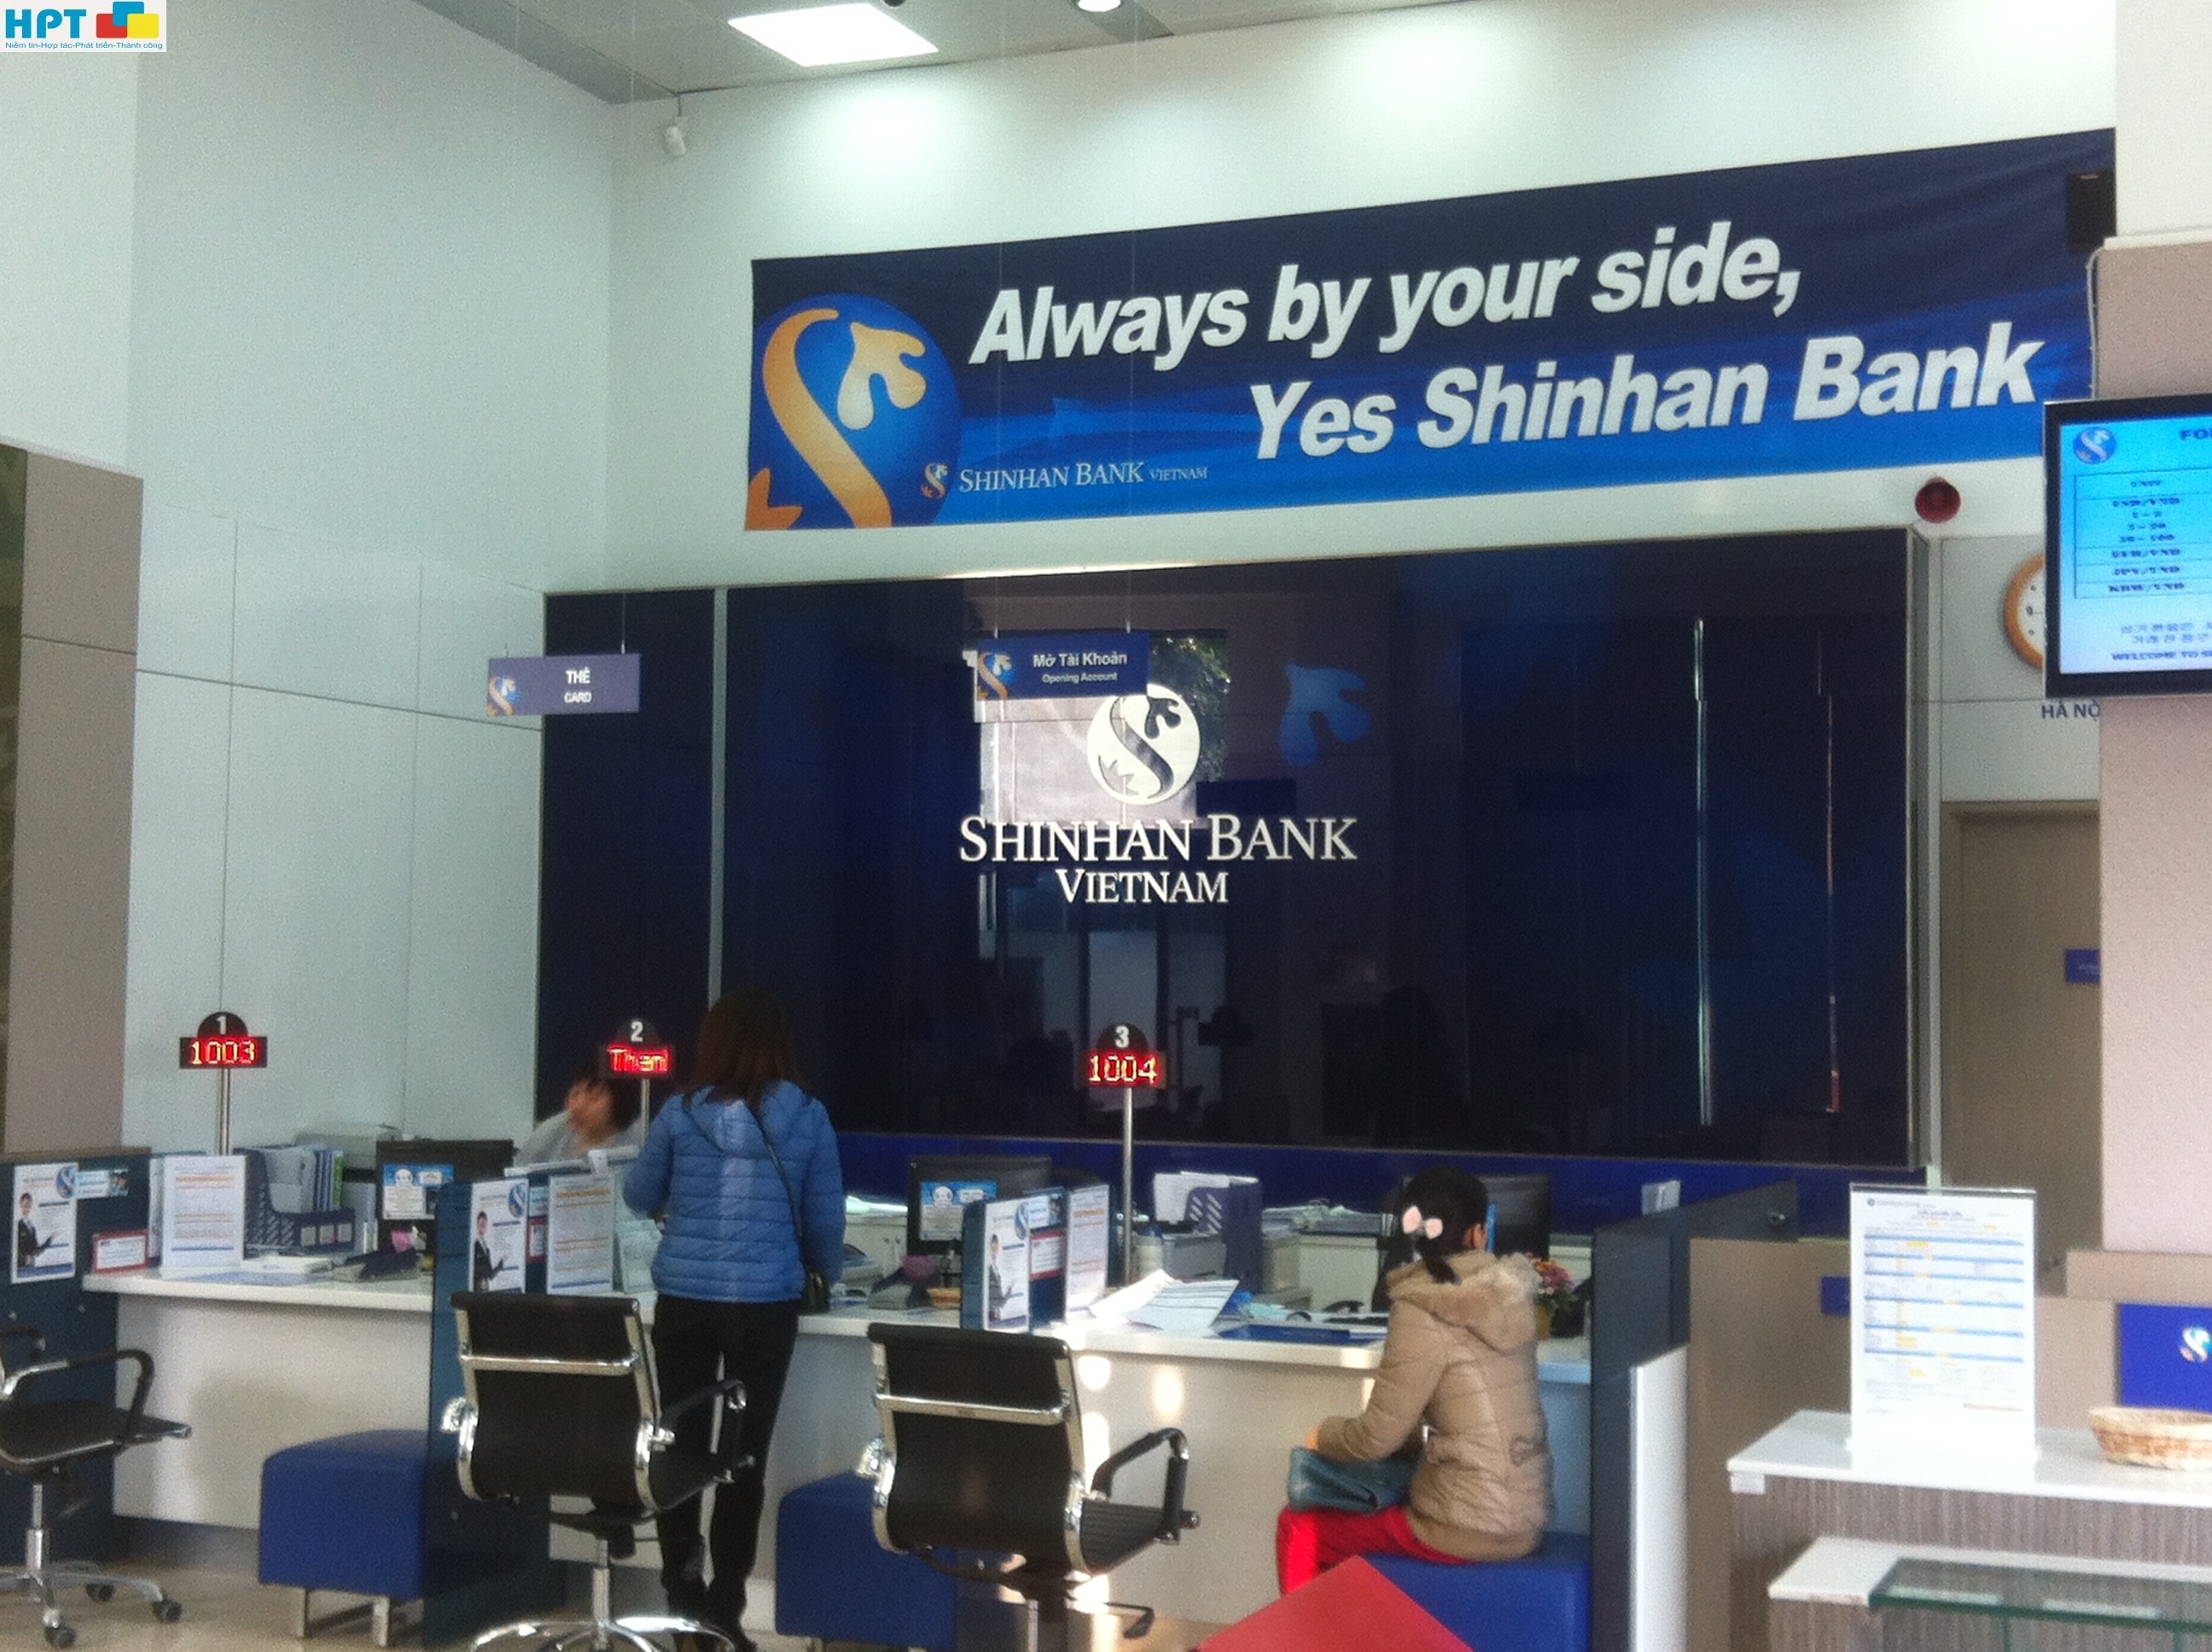 Lắp đặt hệ thống xếp hàng tự động cho Shinhanbank -Hàn Quốc